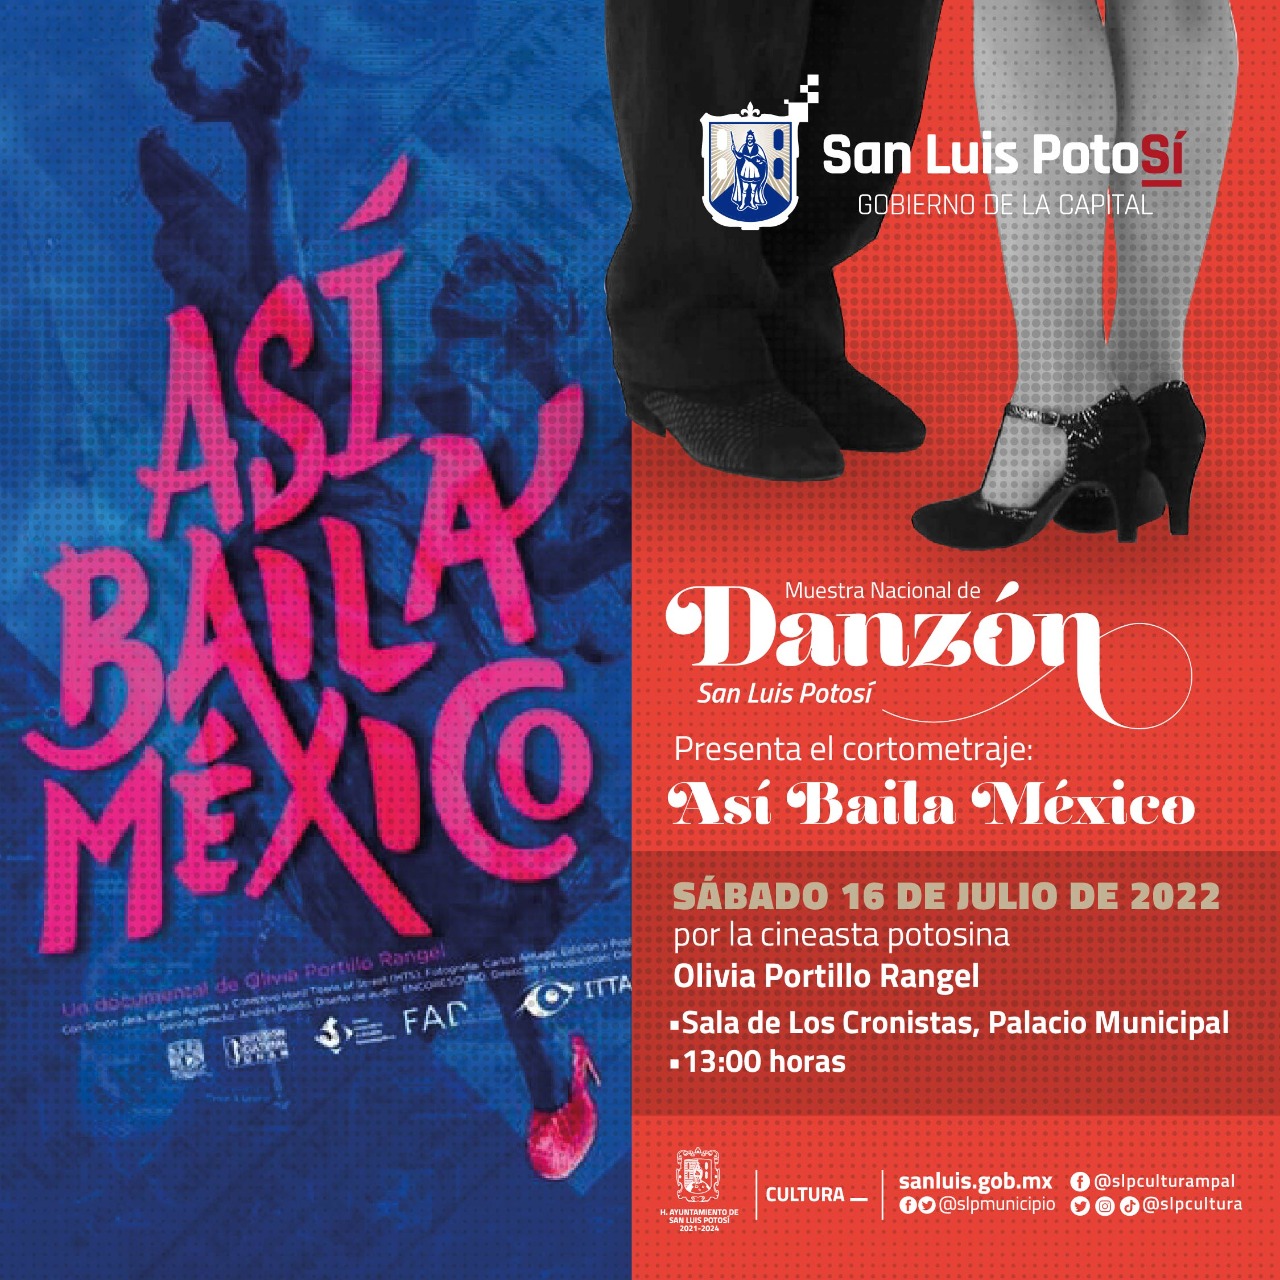 La egresada de la UASLP, presentará dentro de la actividades de la Muestra Nacional de Danzón su cortometraje: “Así baila México”.